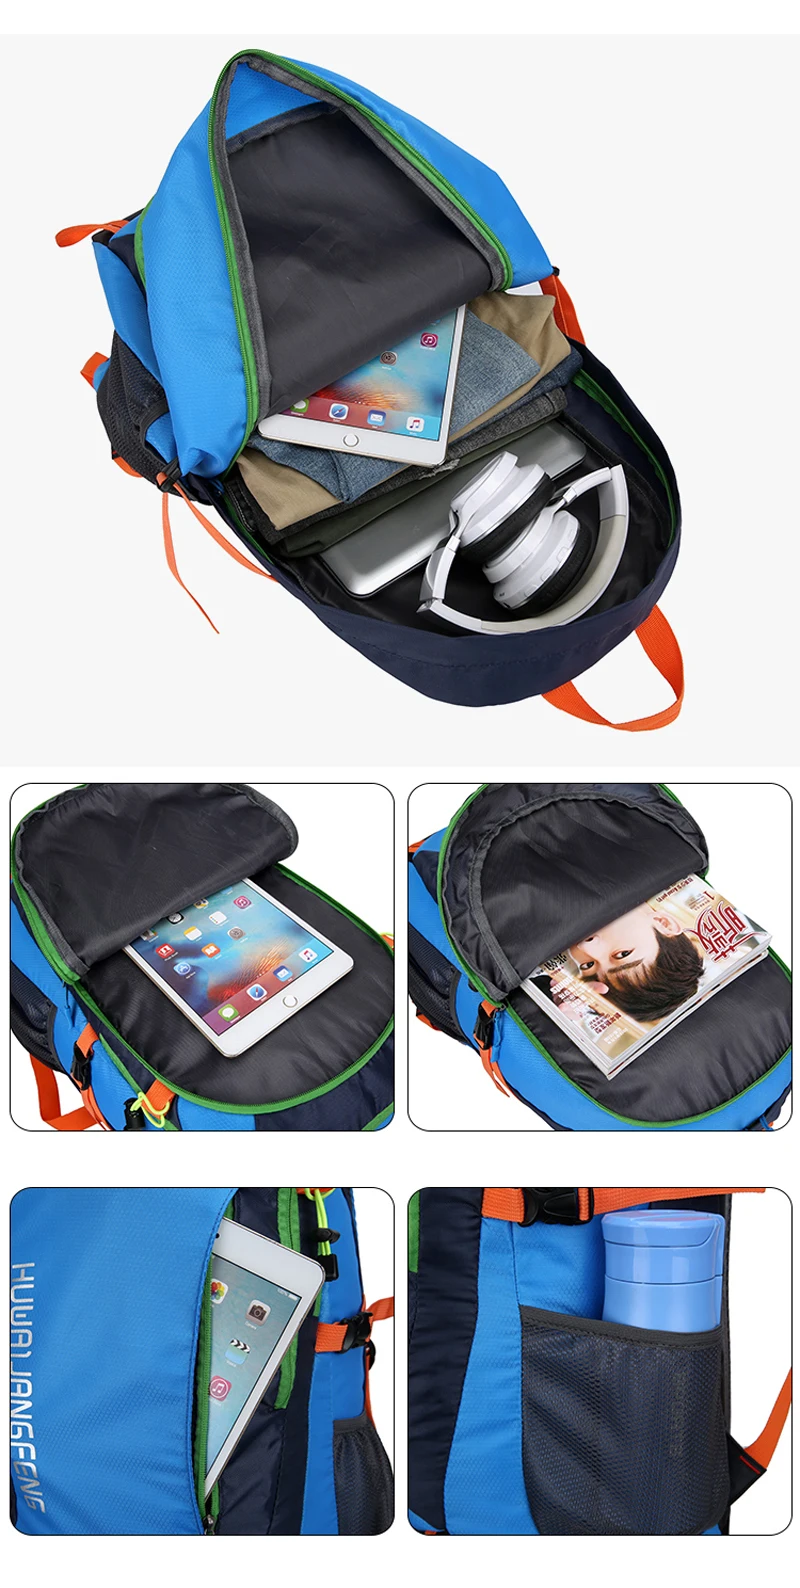 Мужской женский туристический рюкзак, походный рюкзак, сумка для альпинизма, нейлоновая большая емкость, сумки для улицы для мужчин и женщин, большая емкость